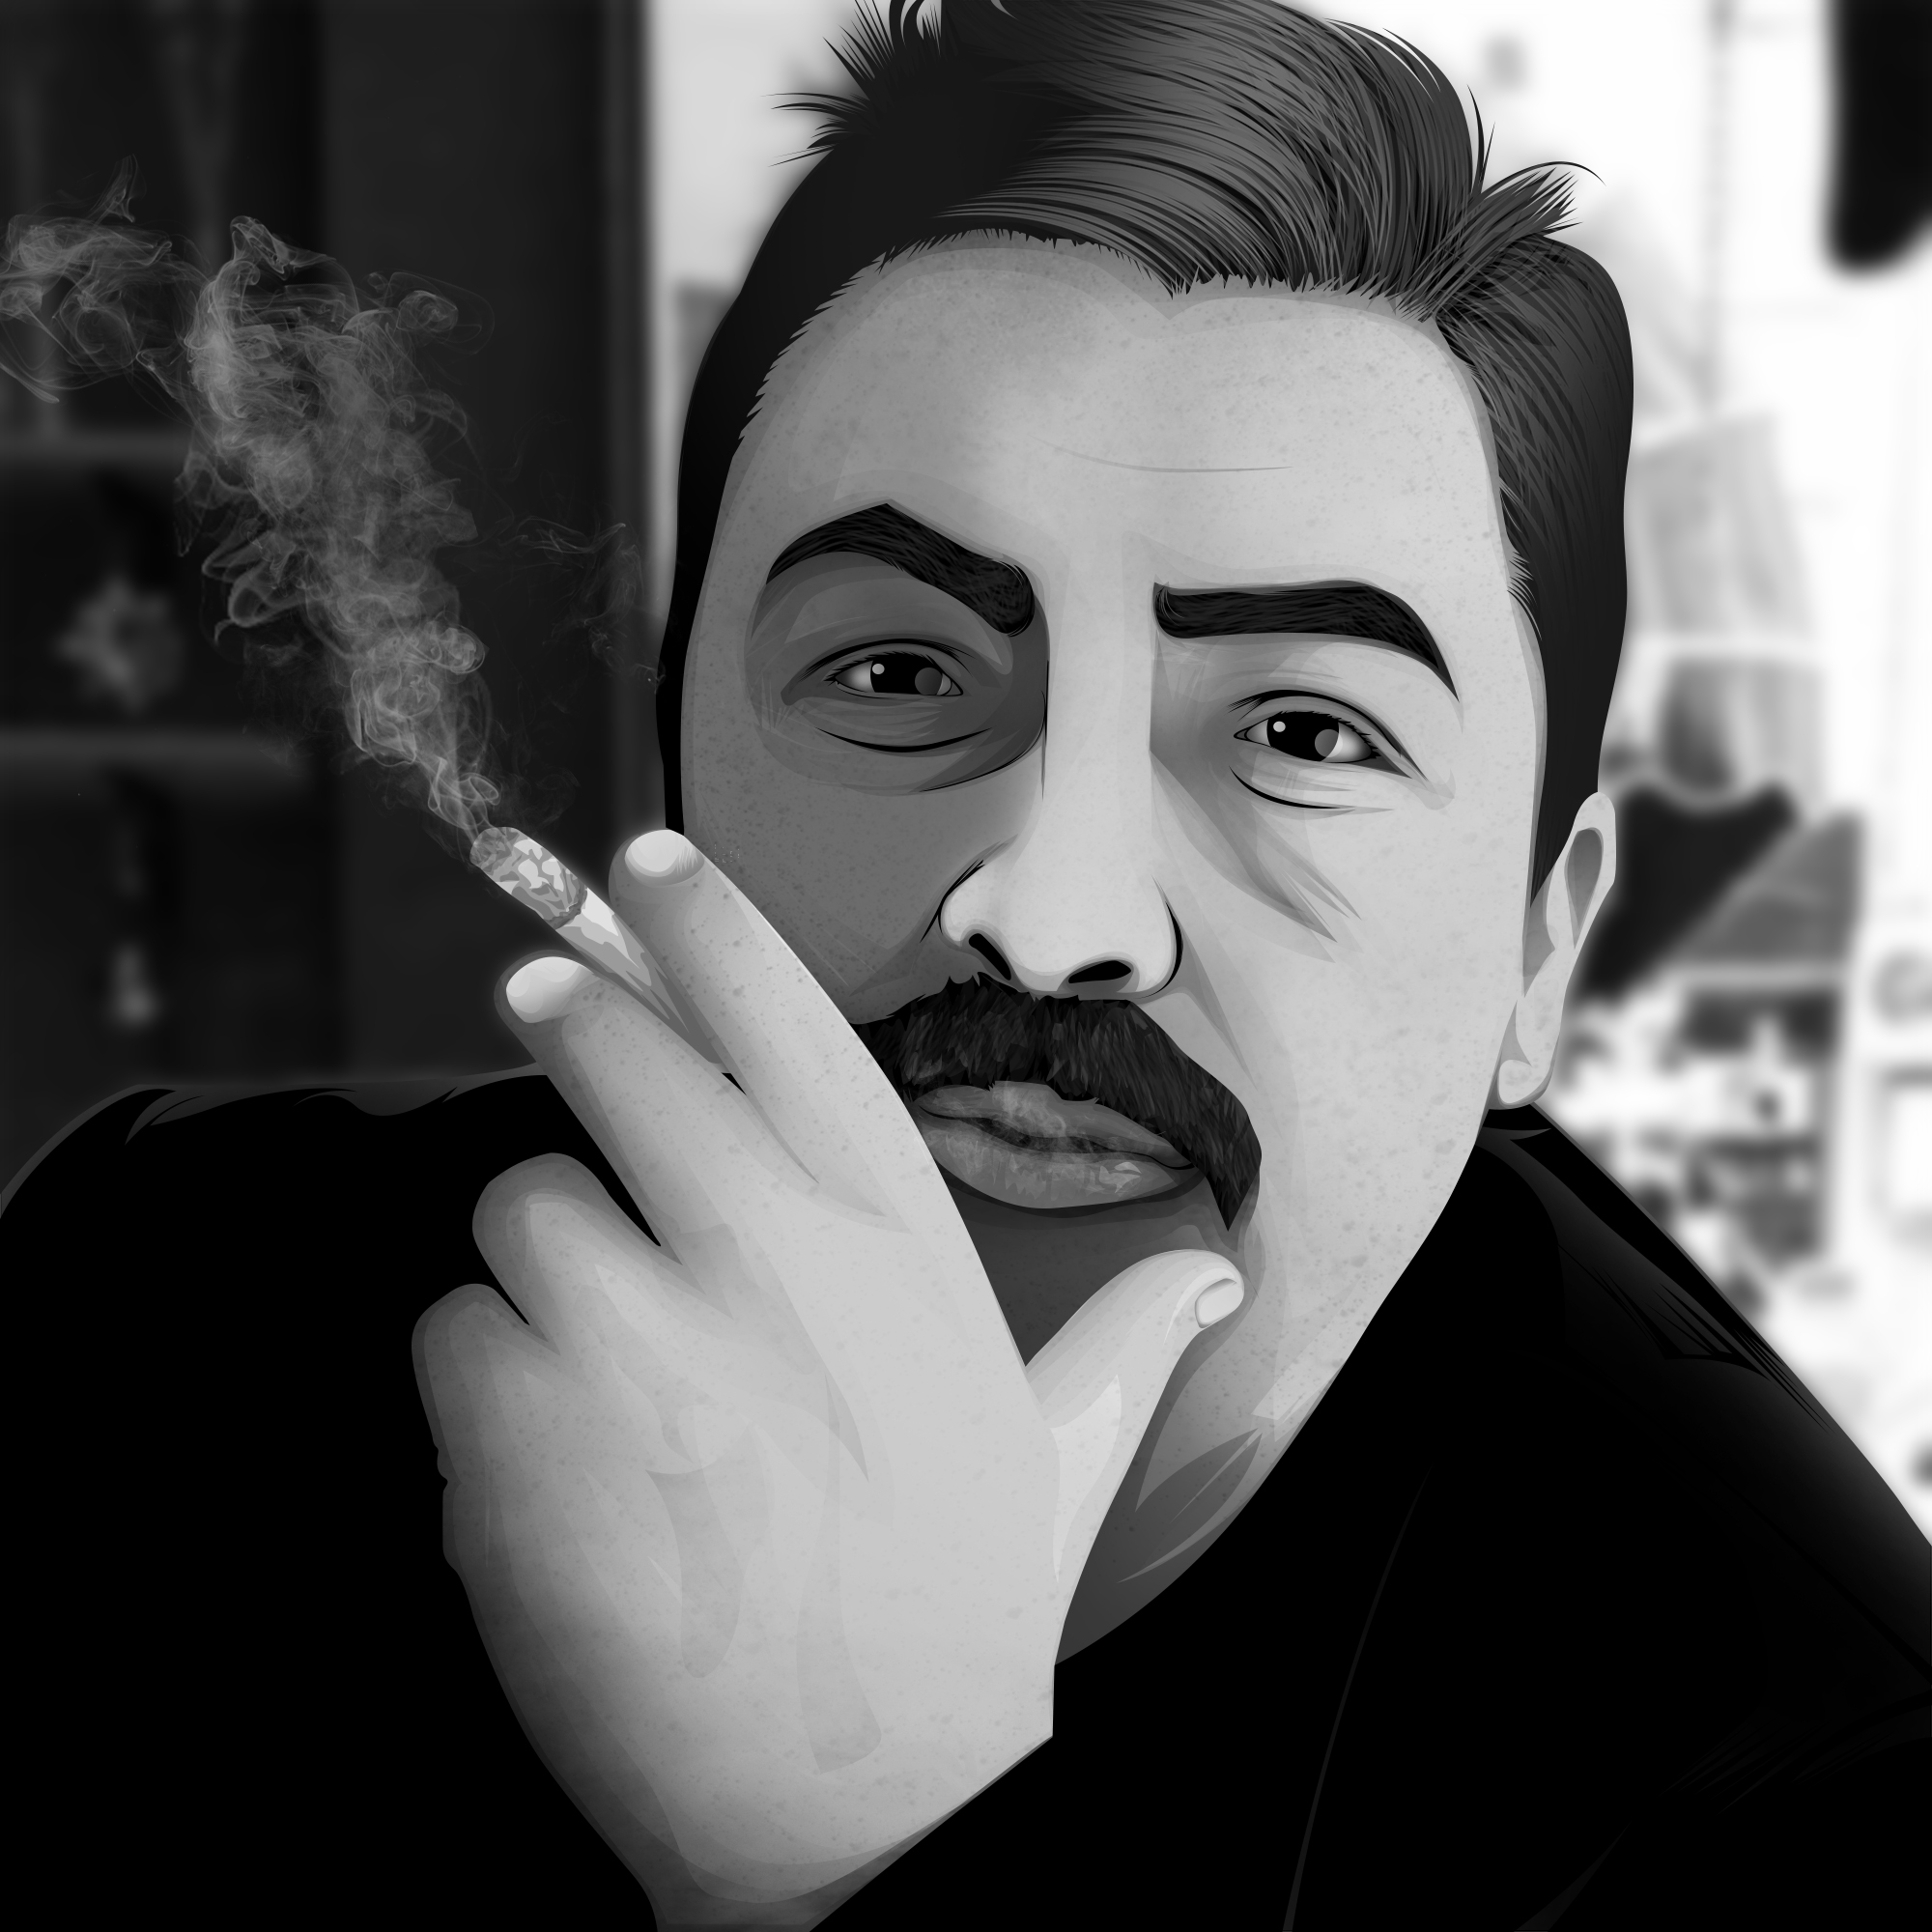 General 2000x2000 vector Vexel illustration drawing digital art portrait men moustache smoking cigarettes monochrome